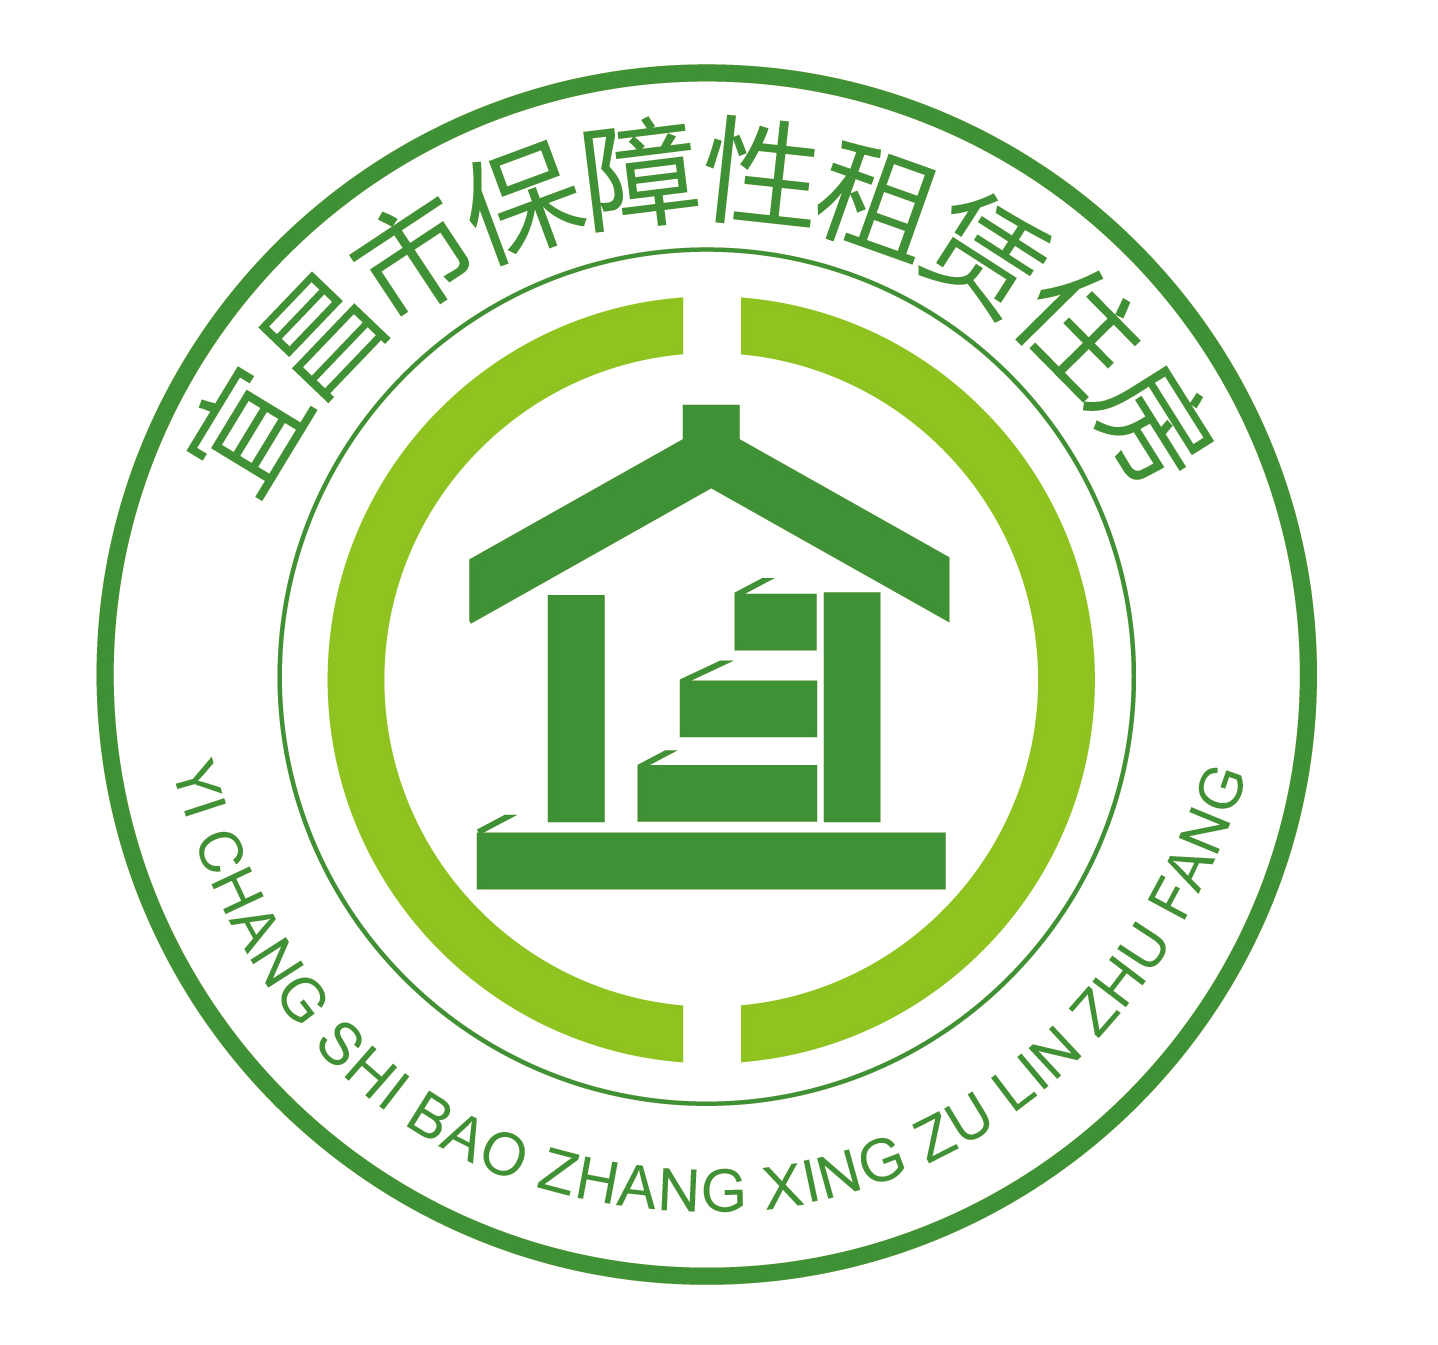 关于征集宜昌市保障性租赁住房标识LOGO设计评选结果的公示